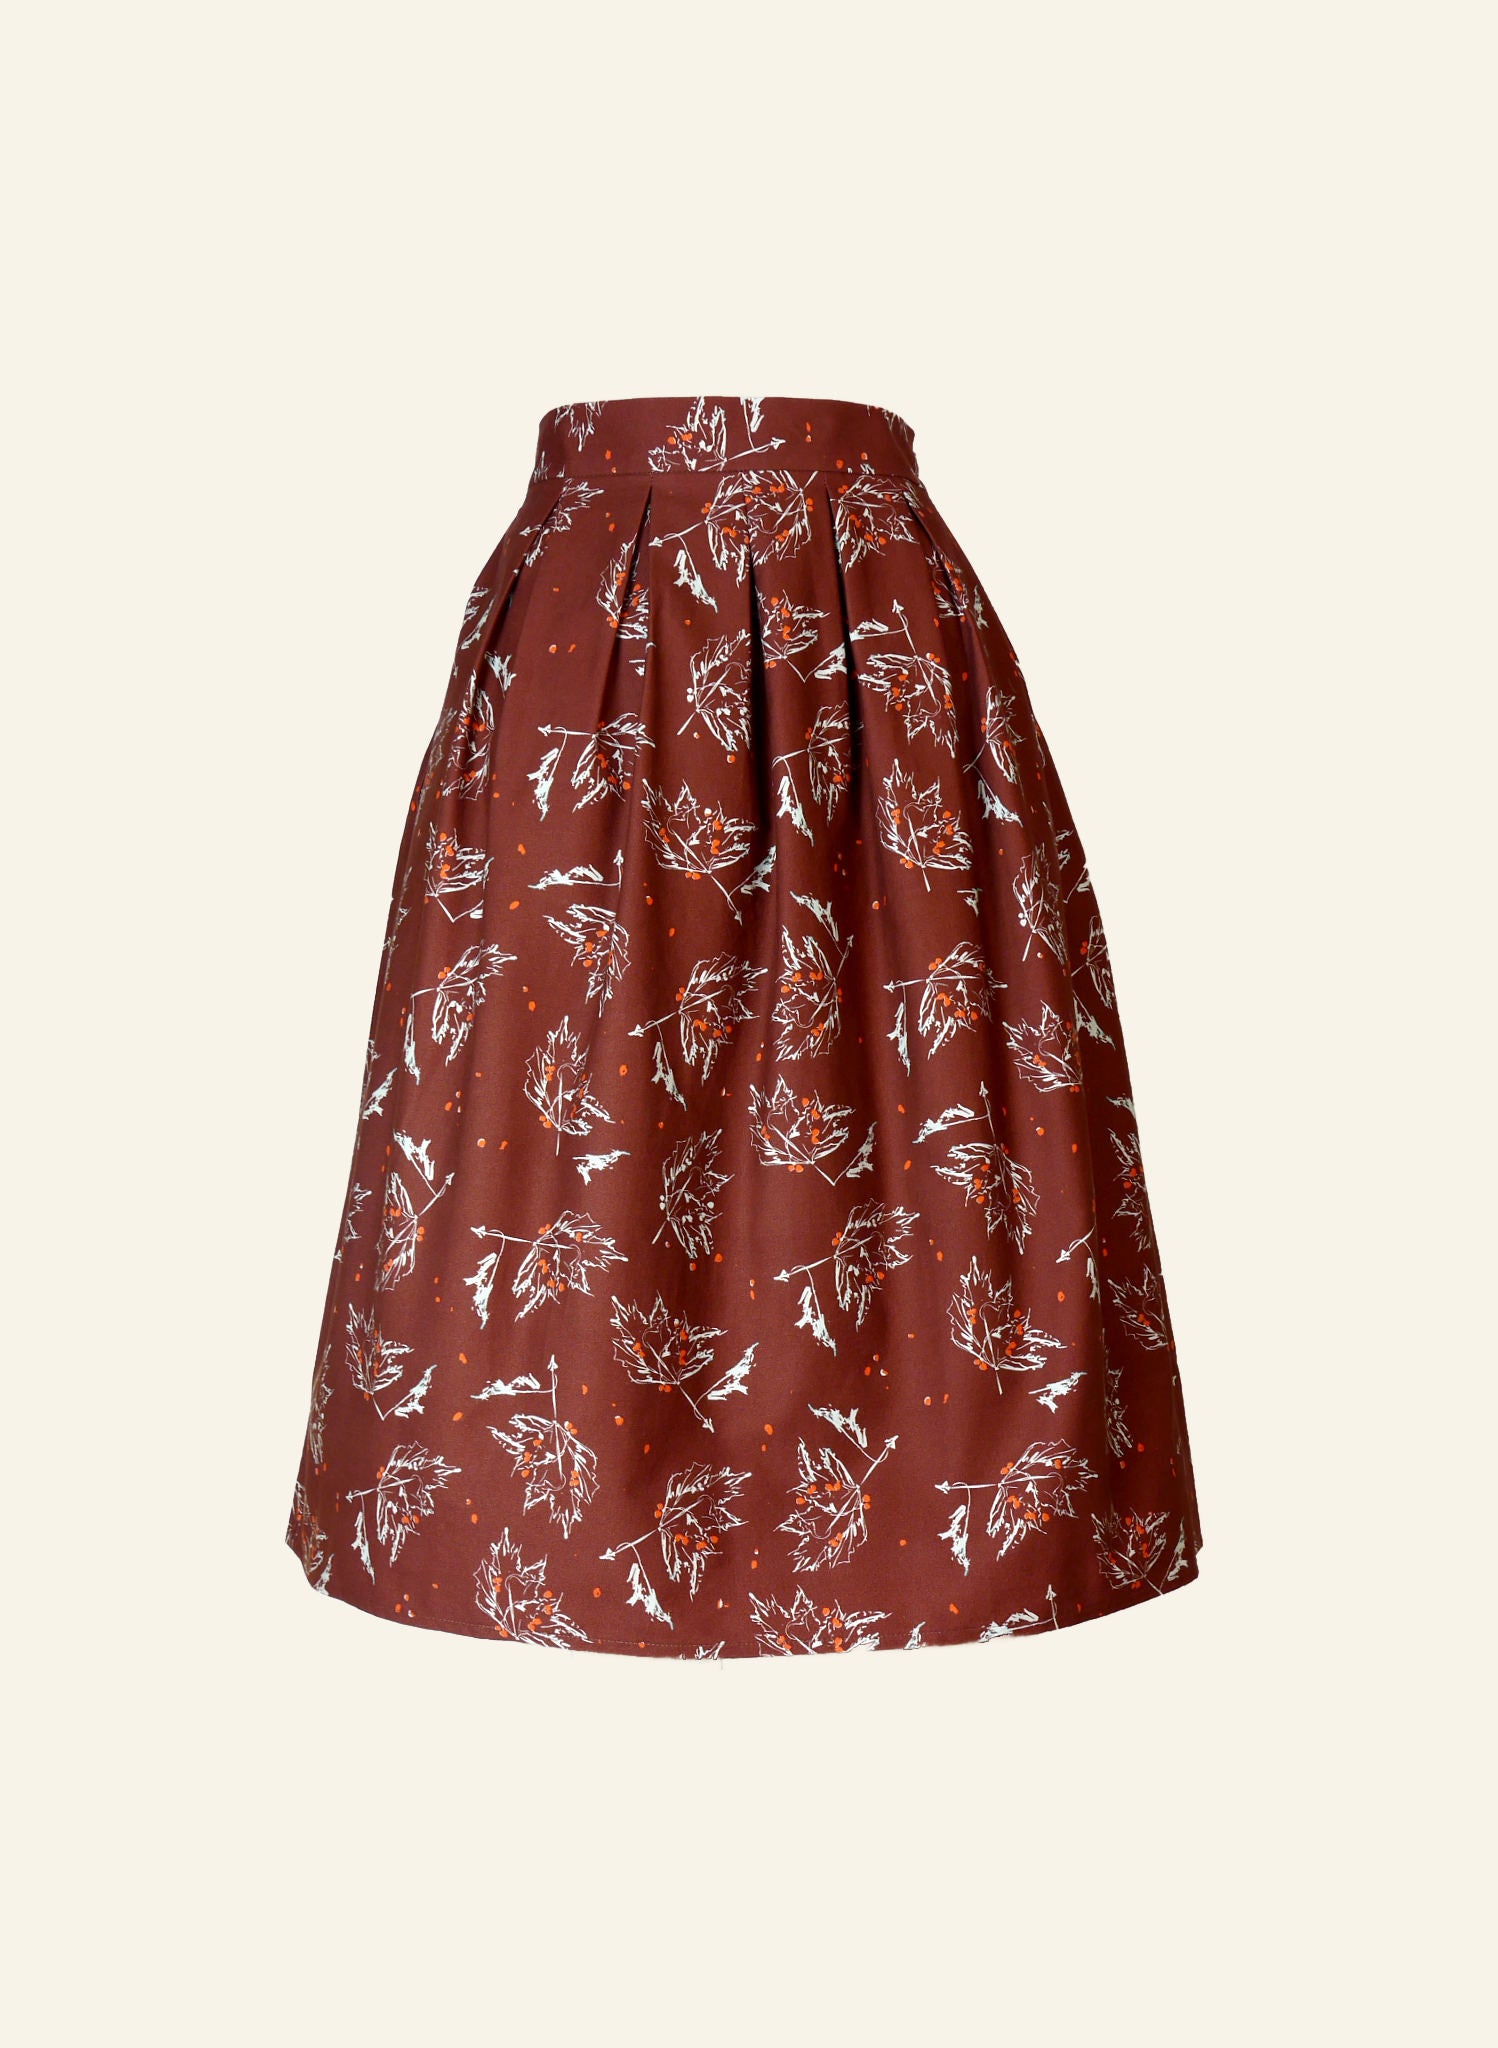 Ada - Chocolate Maple Leaf Skirt